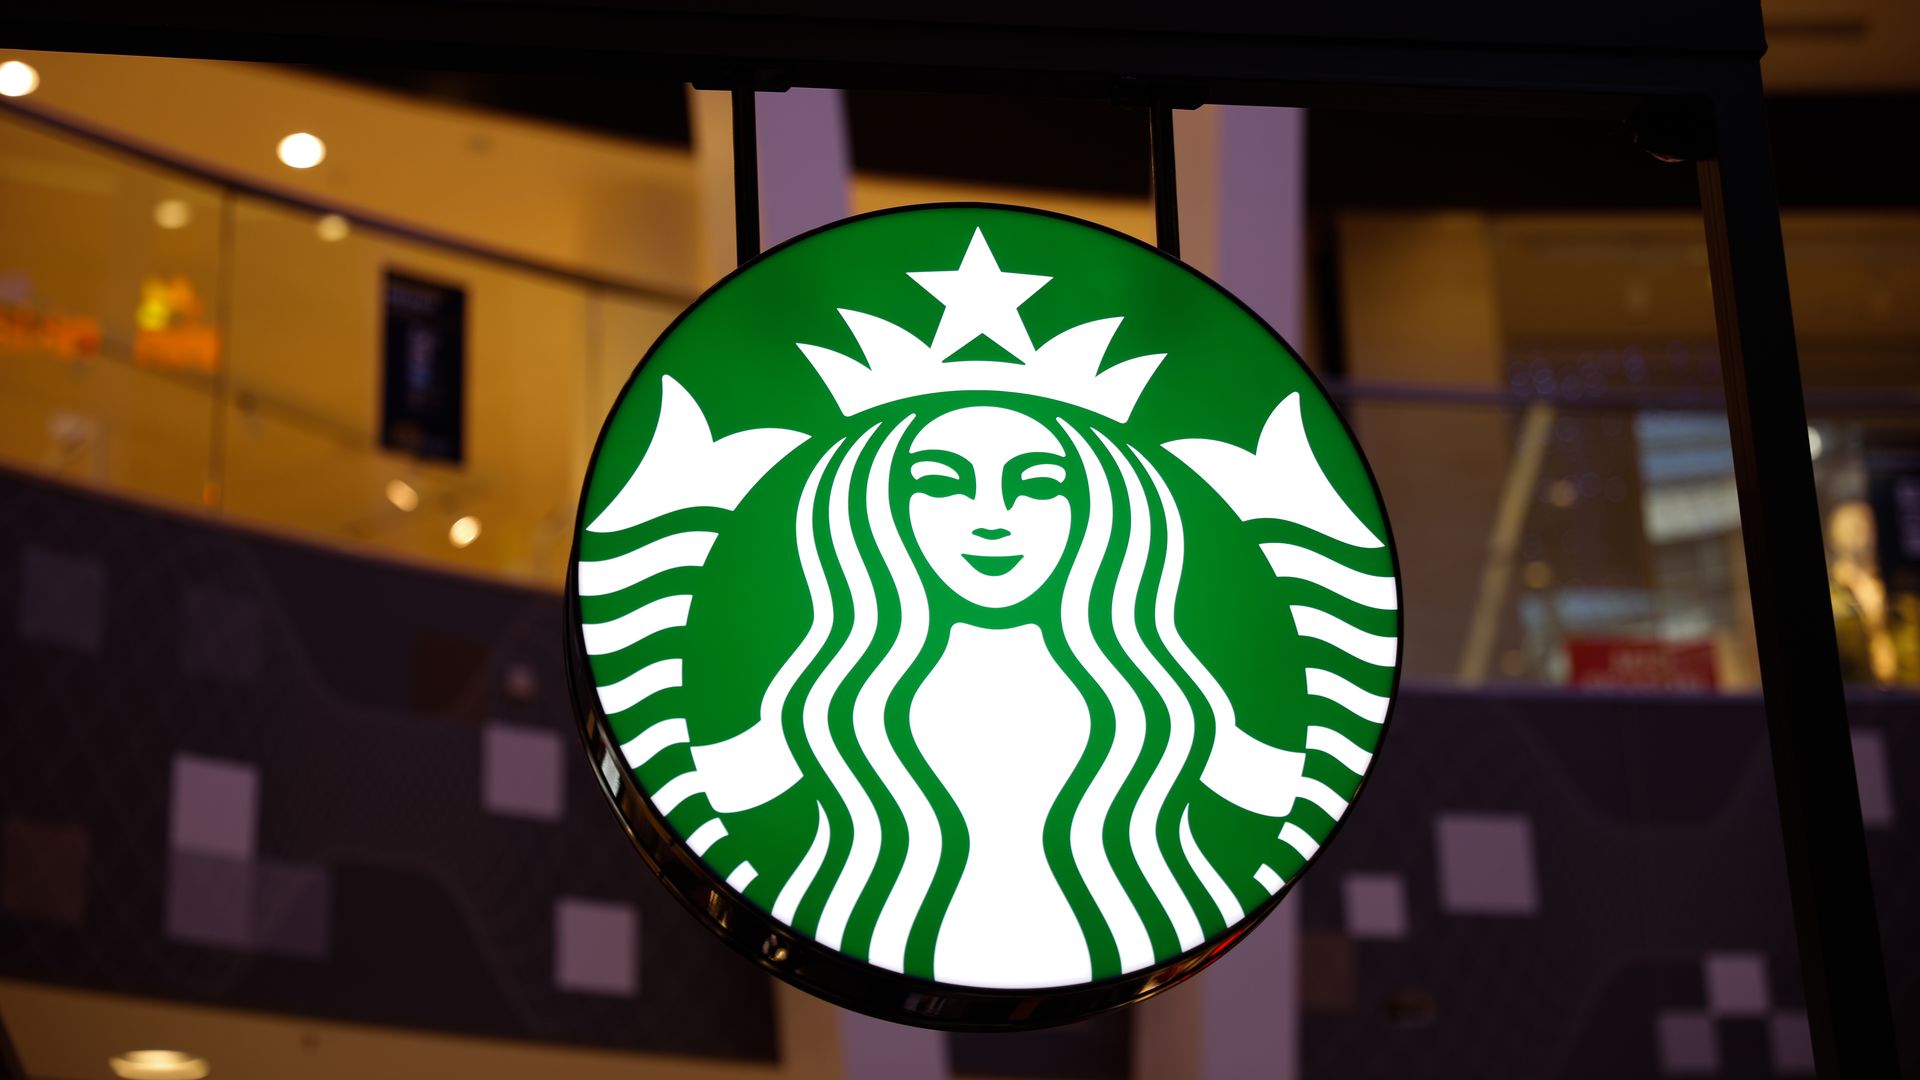 The Starbucks logo